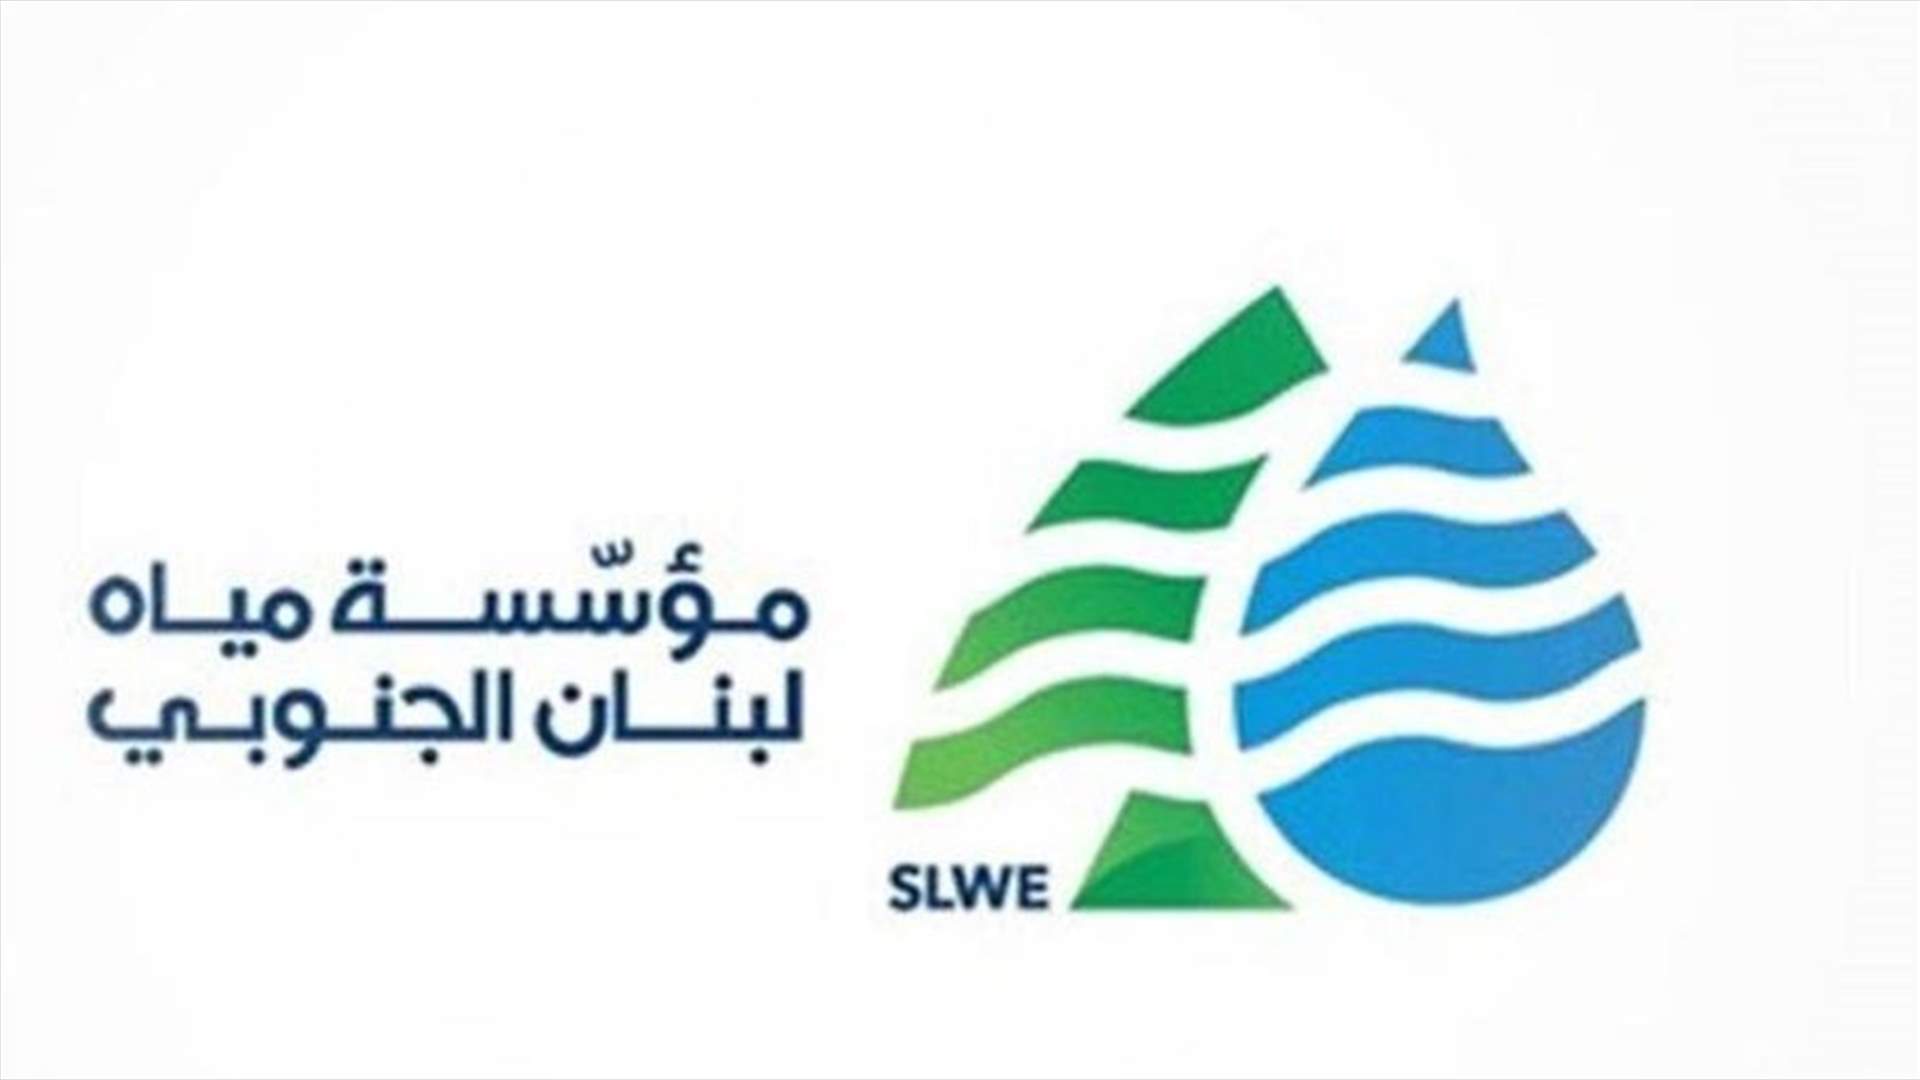 مياه لبنان الجنوبي: نعمل مع كهرباء لبنان لإعادة التيار وتشغيل خطوط الخدمات العامة لمنشآتنا